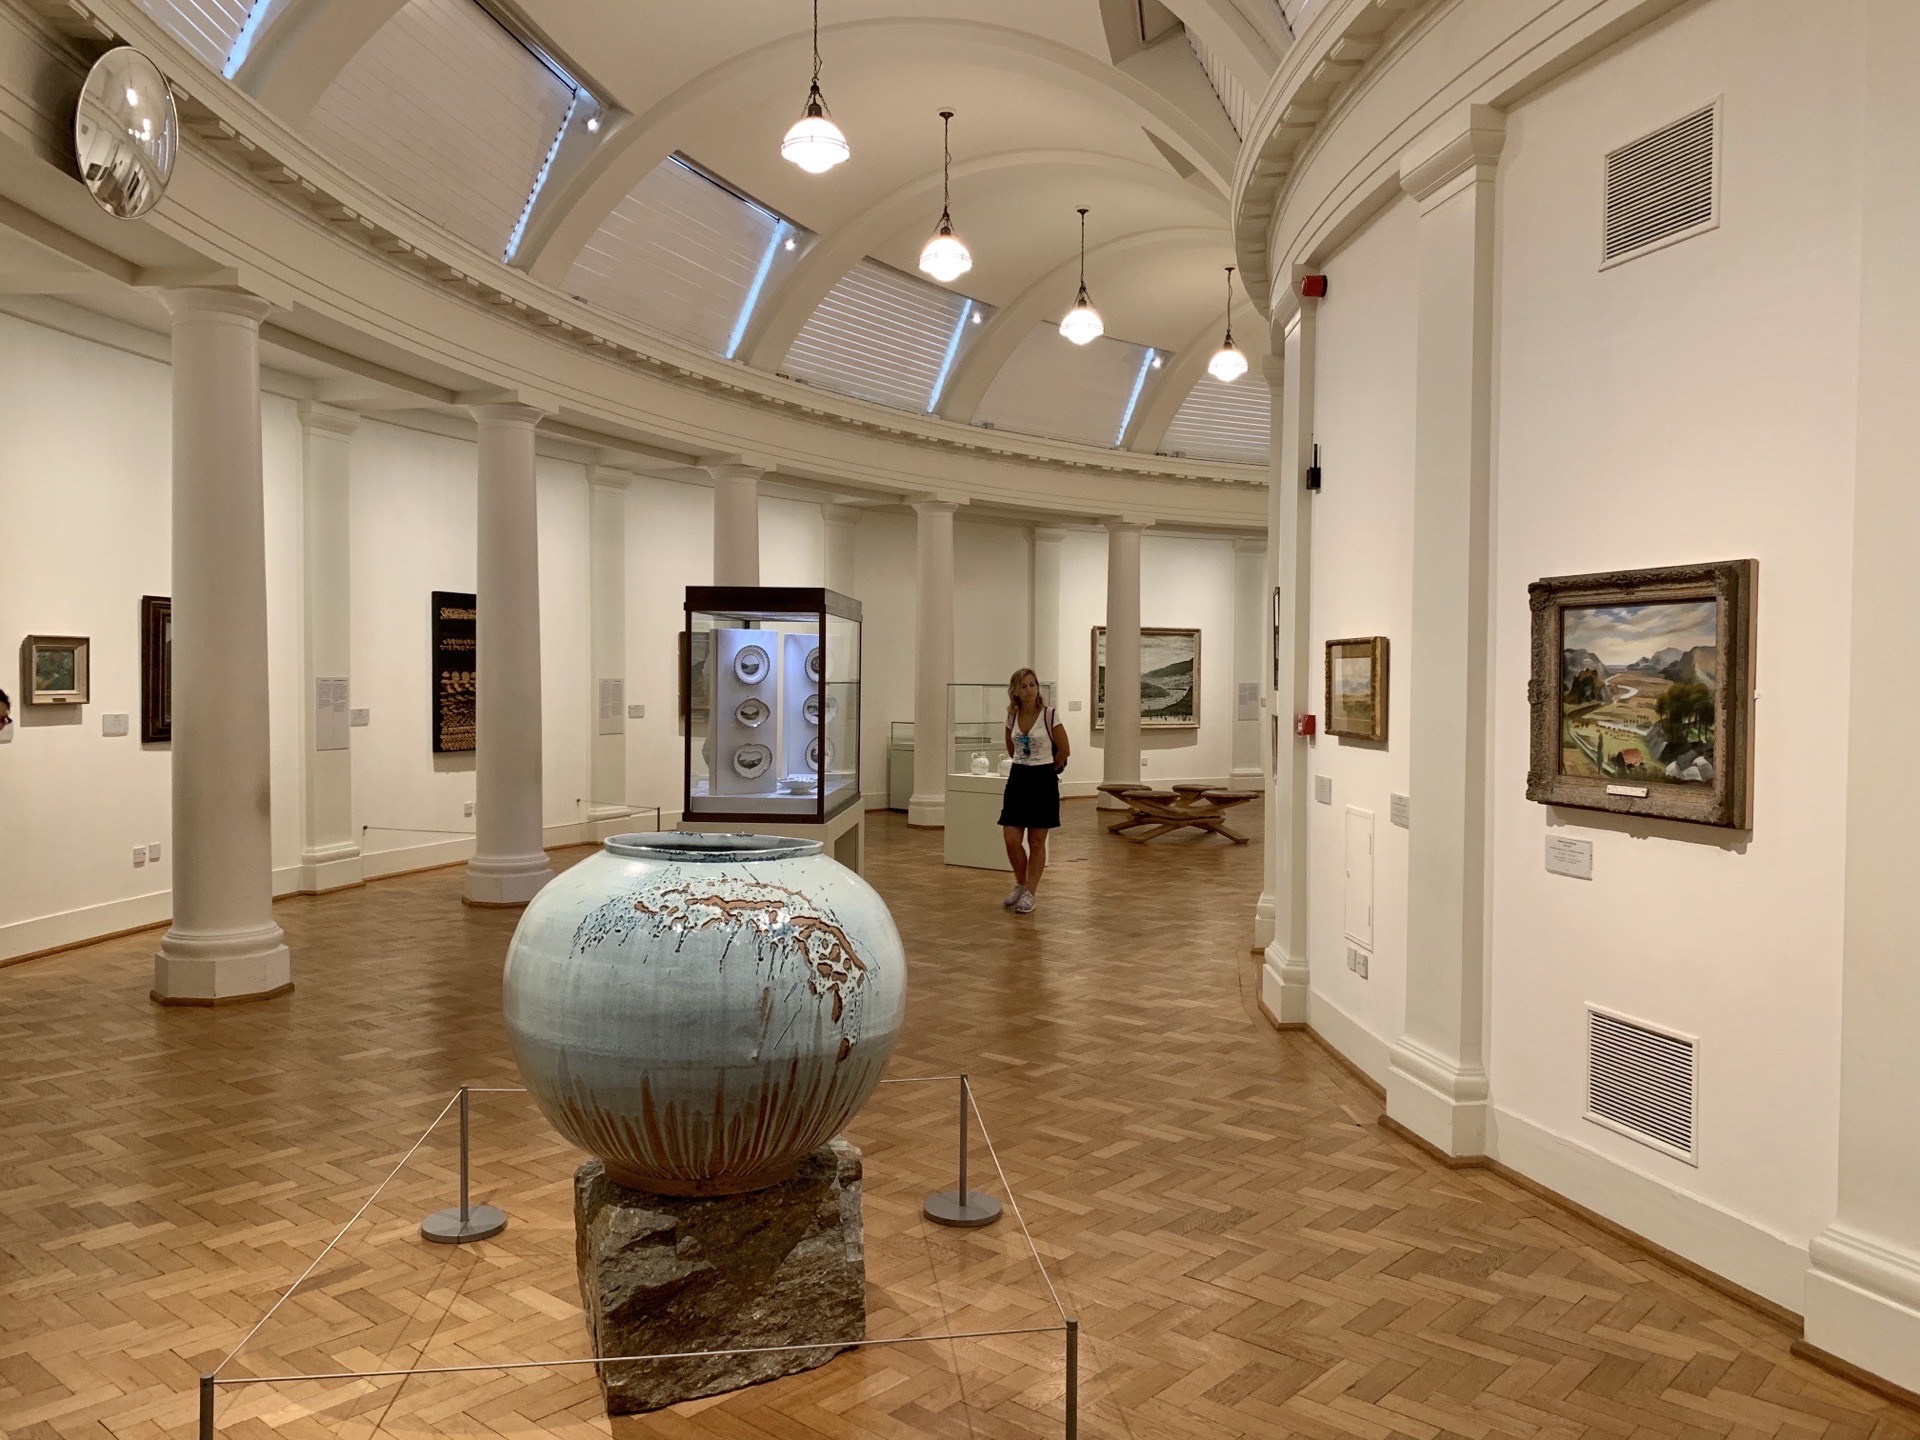 瓷器之琳琅满目——加的夫国家博物馆有非常丰富的包括英国在内的欧洲瓷器庋藏，堪称大观。其展陈呈现了欧洲